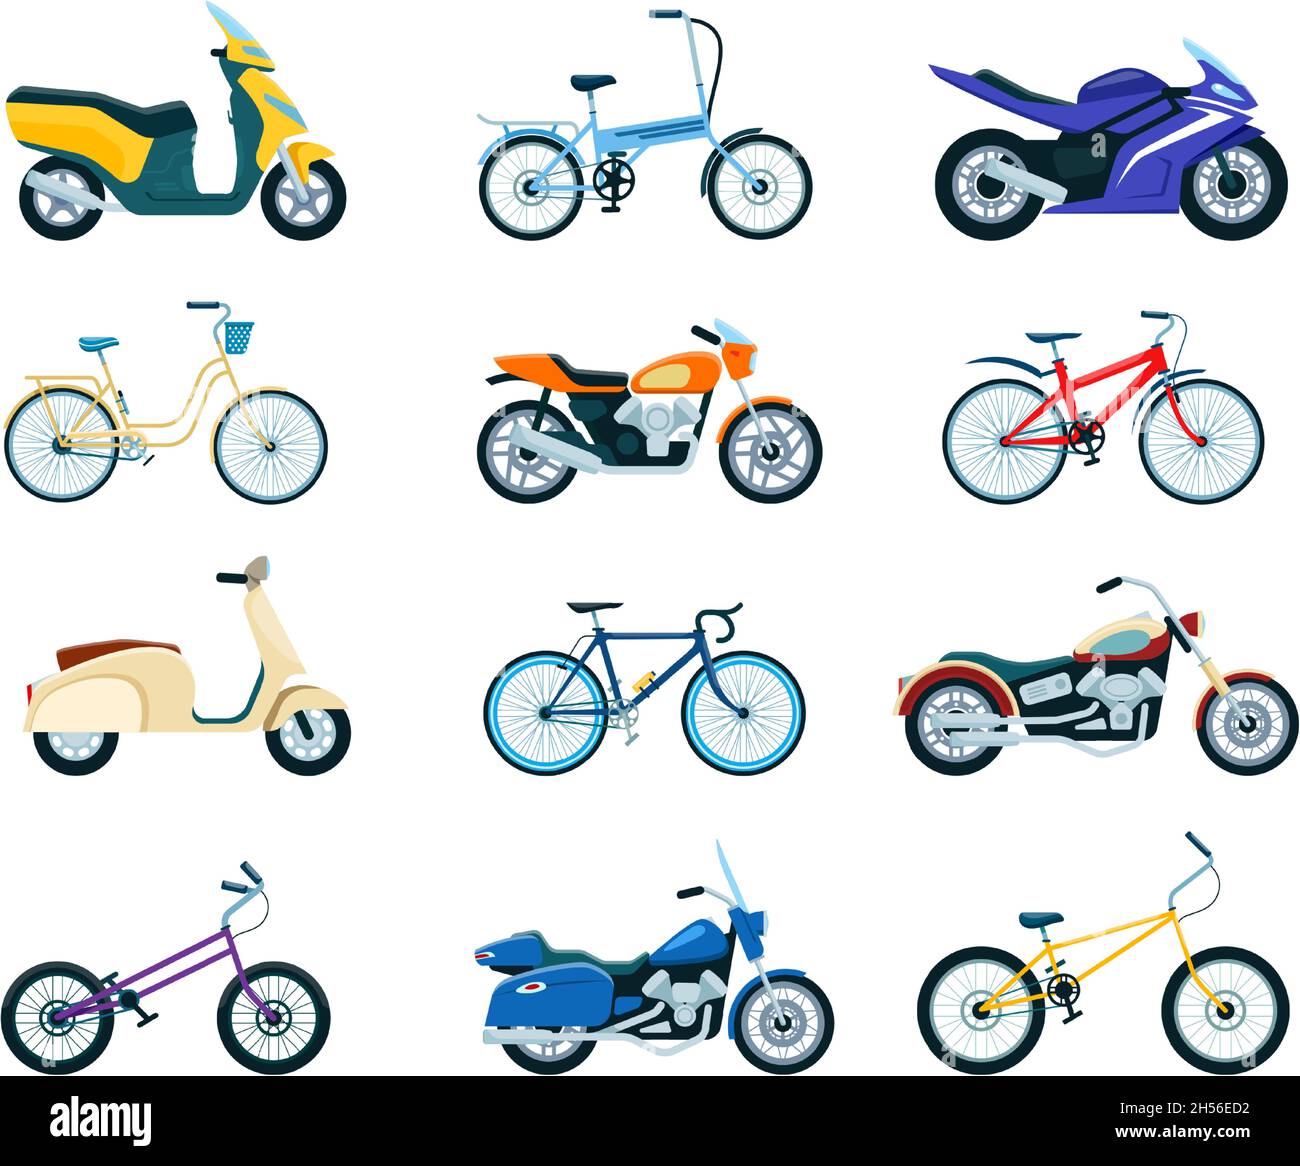 Moto e biciclette, bicicletta, moto, scooter a consegna. Vari modelli di  veicoli per motociclette, cyclette, chopper, set vettoriale piatto per bici  da strada. Spedizione di prodotti e viaggi o trasporti Immagine e